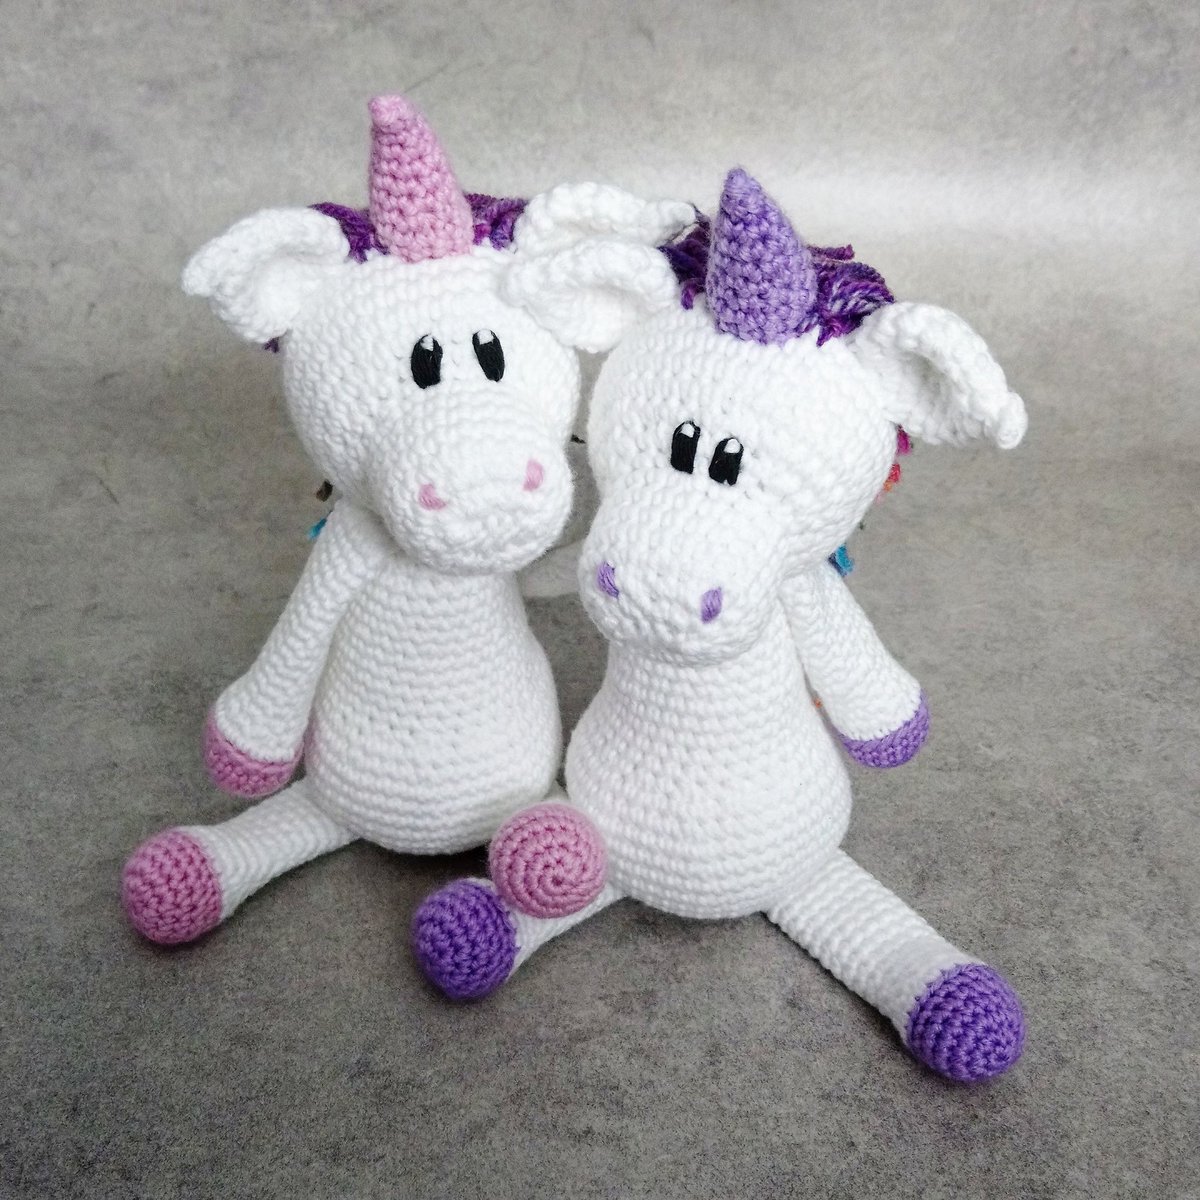 Happy Sunday all! Awaiting a delivery from a new supplier before I can finish my latest WIP. 🌈

#crochet #crafts #unicorns #unicorn #unicorncrochet #unicorntoy #smallbusiness #uksmallbiz #UKBiz